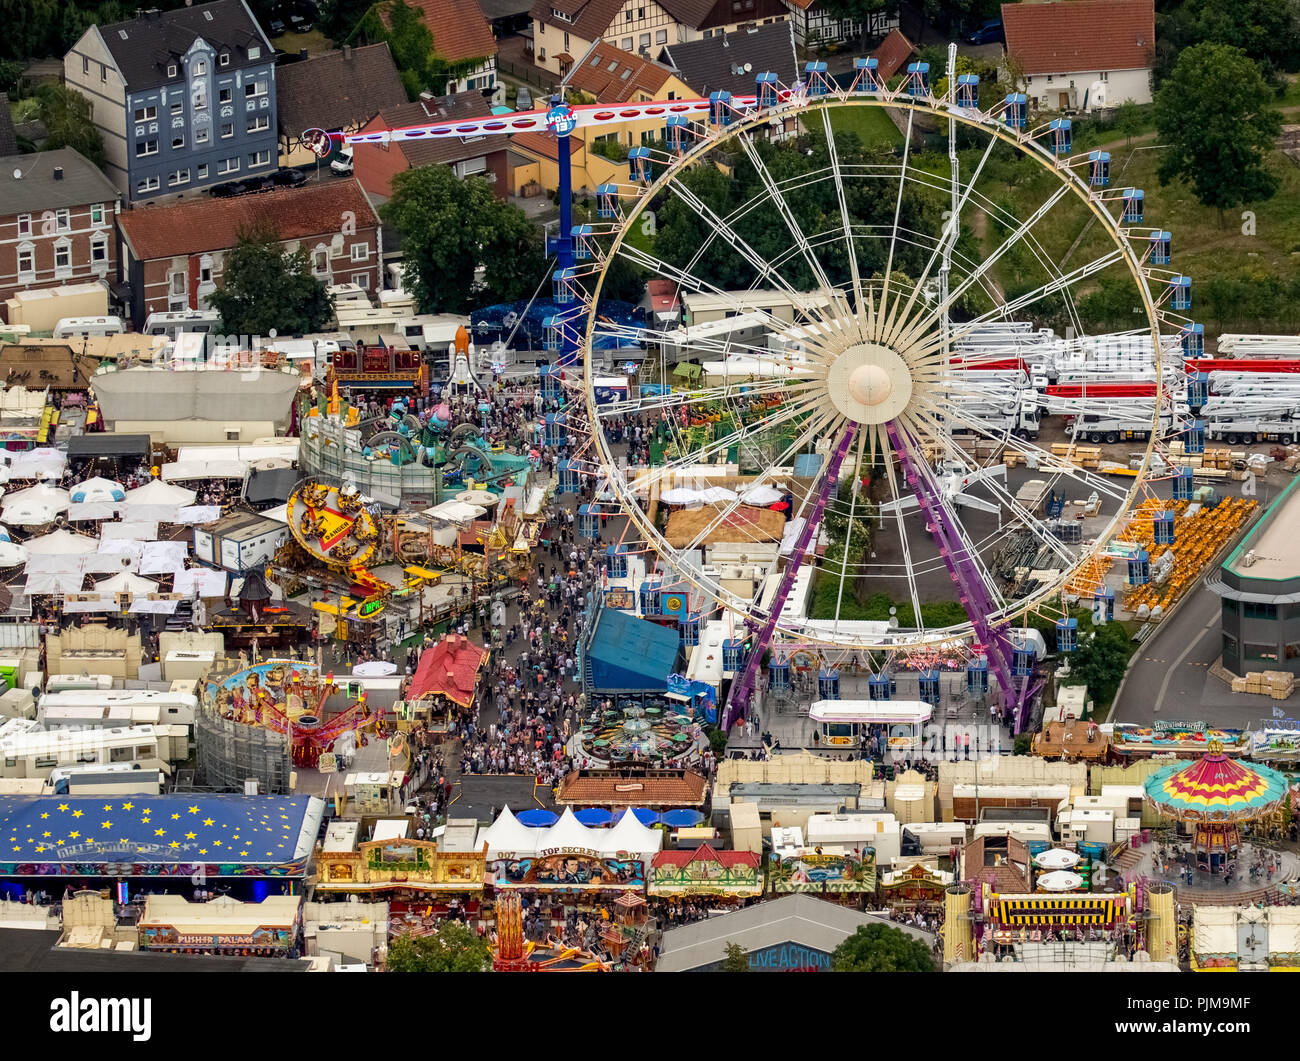 Riesenrad Sky Lounge Rad, Riesenrad Bellevue, 2016 Cranger Kirmes, das größte Volksfest im Ruhrgebiet, Herne-Crange, Ruhrgebiet, Nordrhein-Westfalen, Deutschland Stockfoto